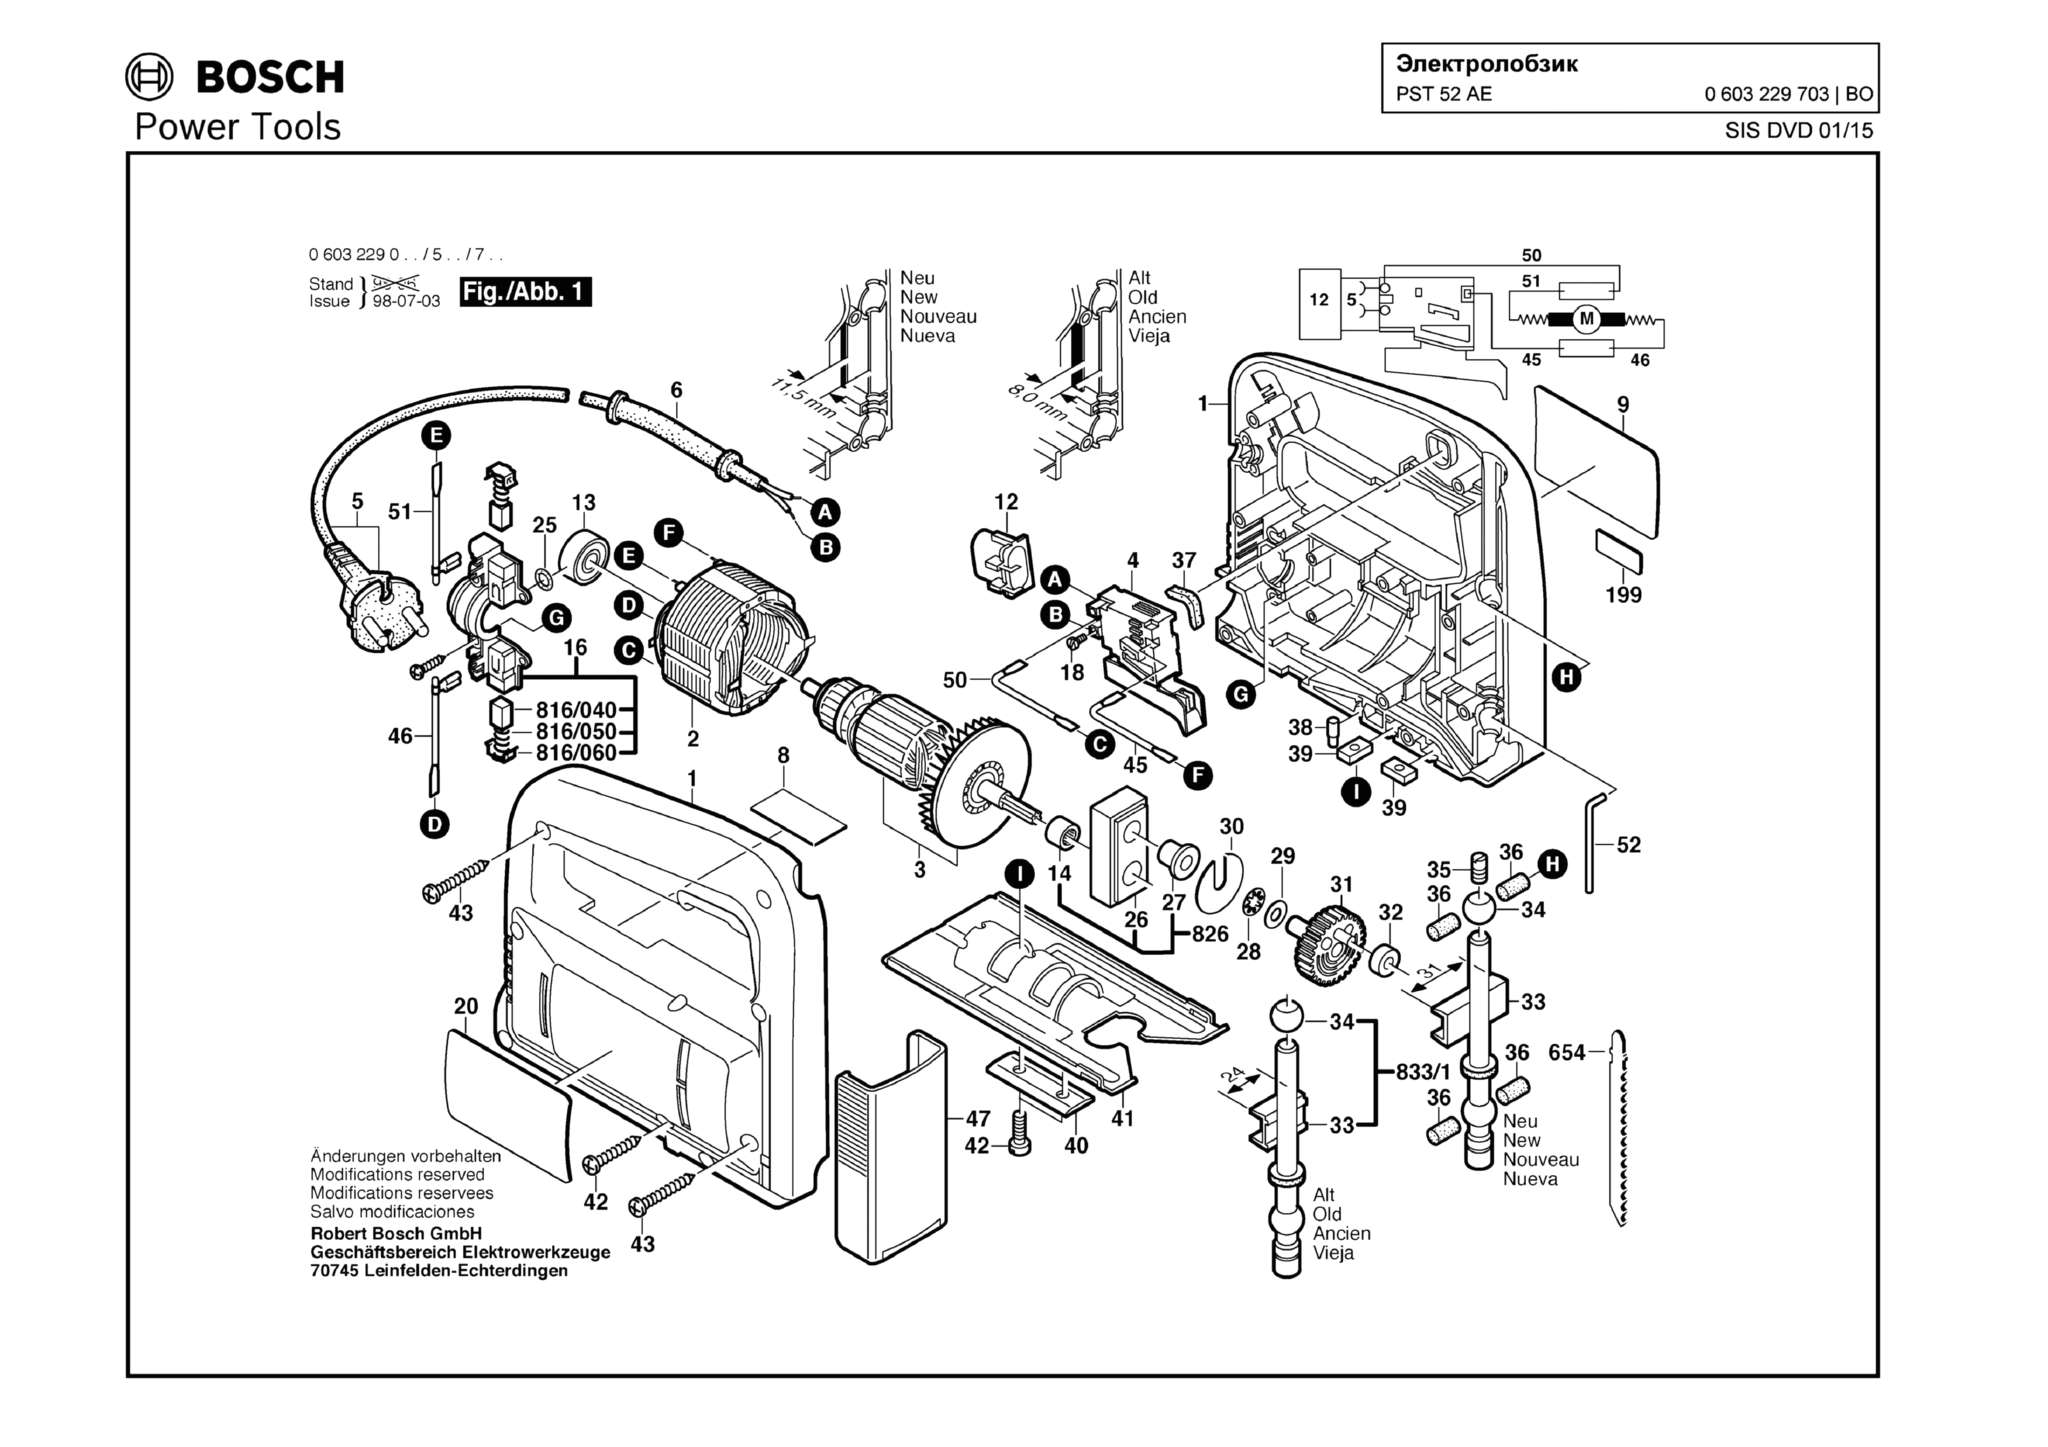 Запчасти, схема и деталировка Bosch PST 52 AE (ТИП 603229703)